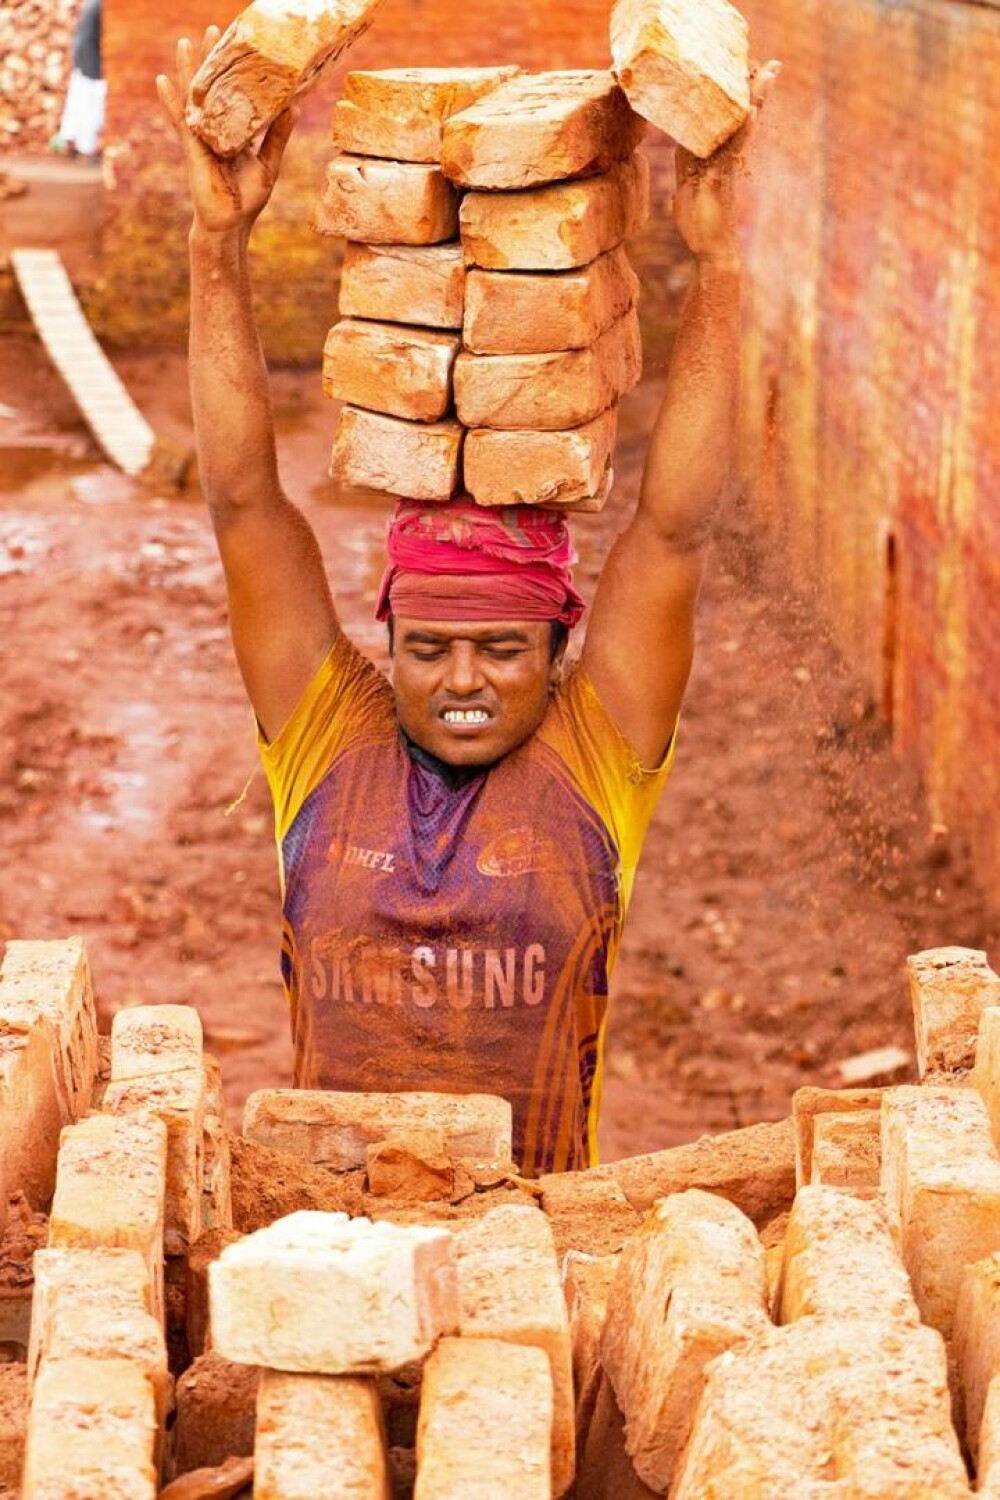 Imagini unice cu câmpurile de cărămidă din Bangladesh. Muncitorii cară câte 20 de kilograme pe cap. GALERIE FOTO - Imaginea 4